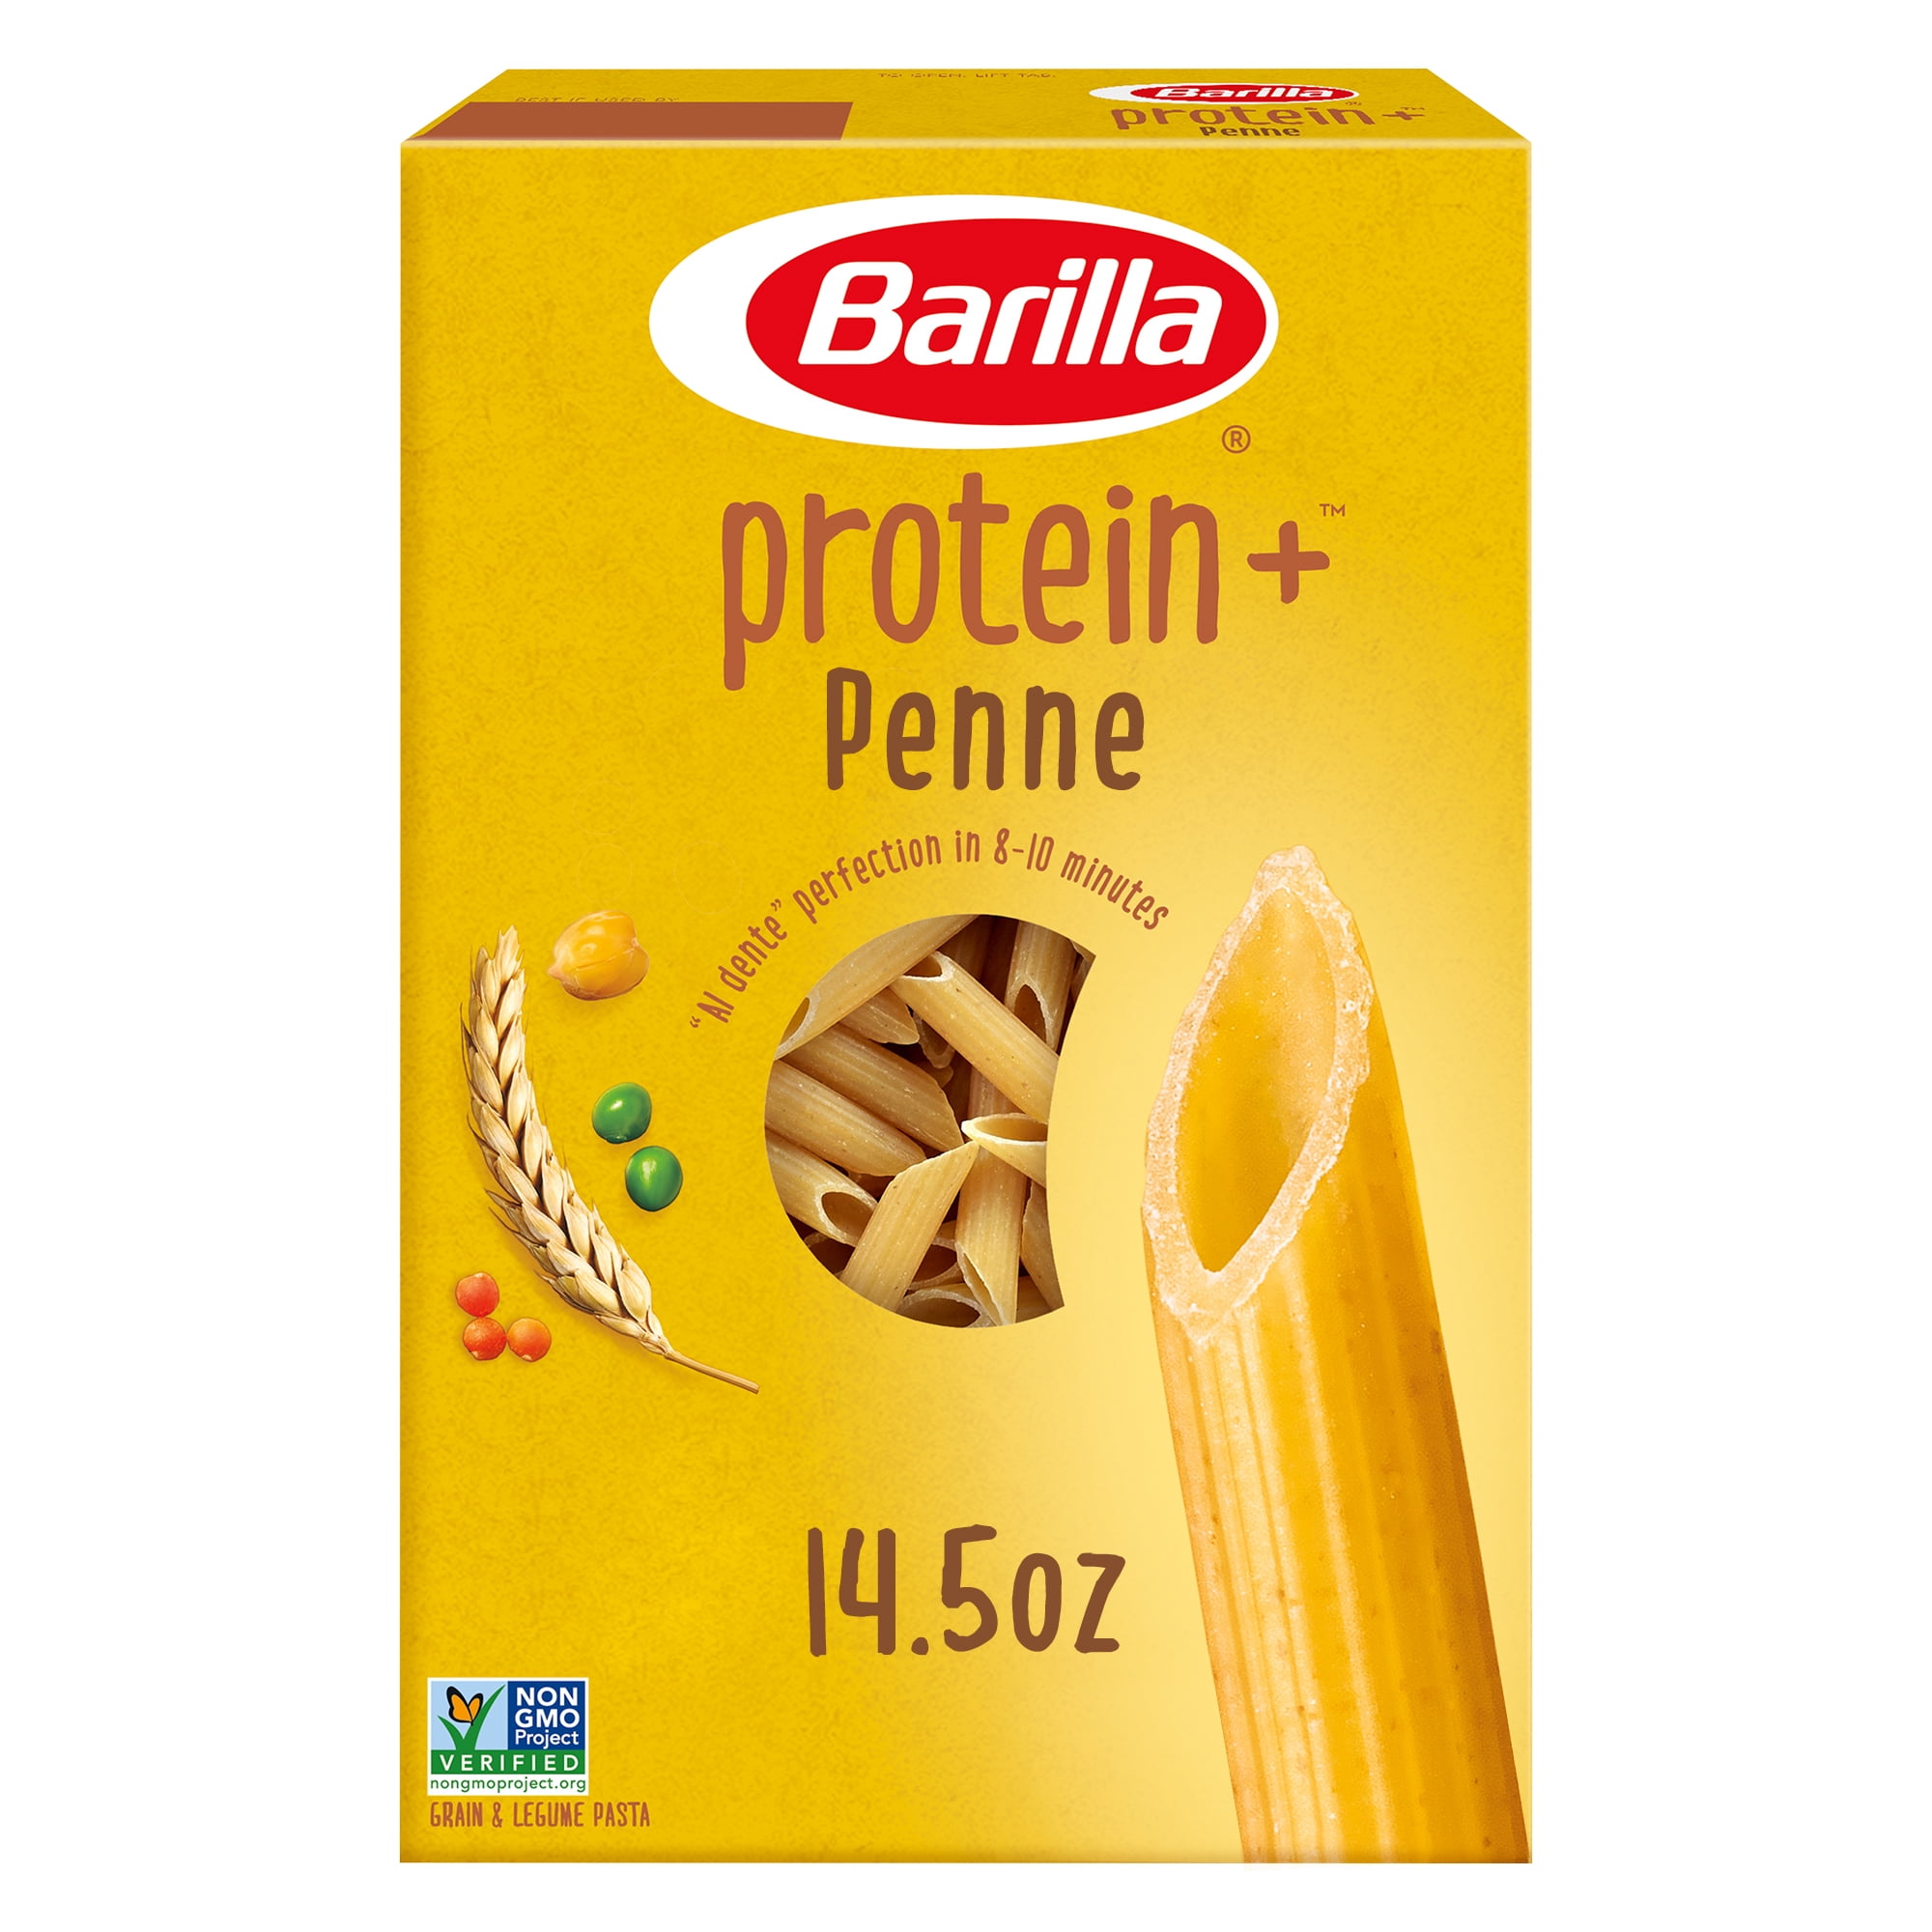 Barilla Protein+ Pasta Penne, 14.5 oz | 